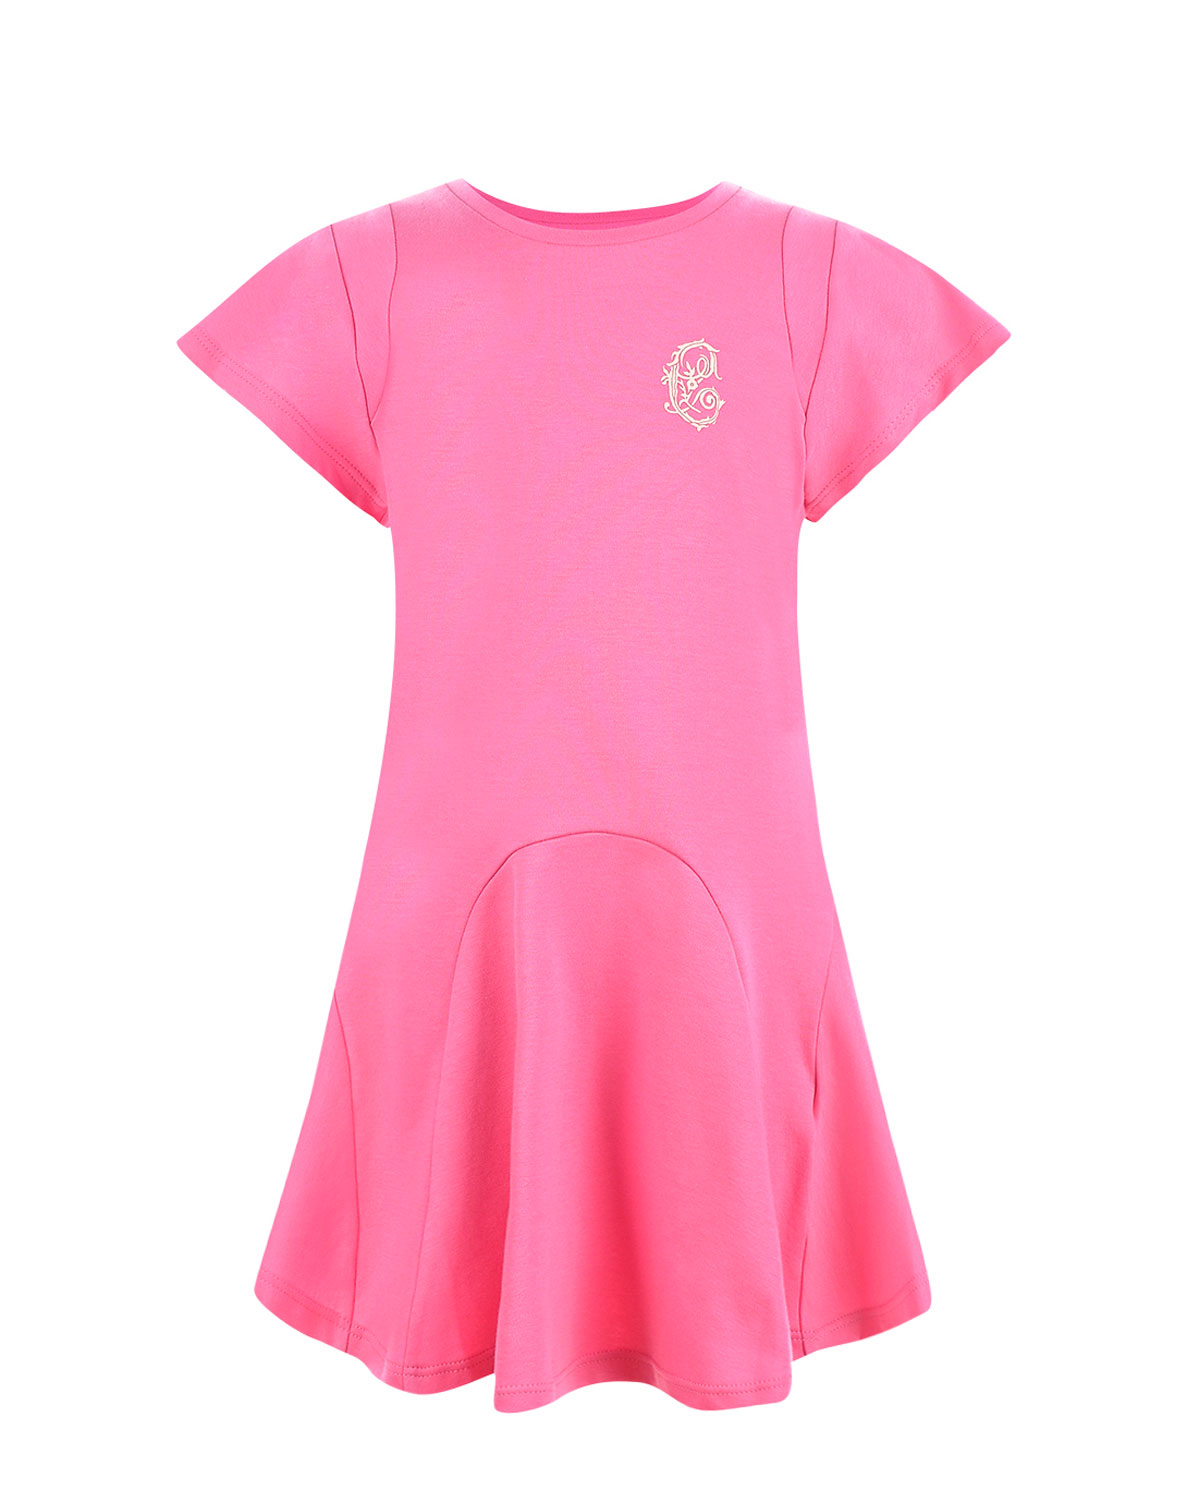 Розовое платье из хлопка с логотипом Chloe детское - фото 1